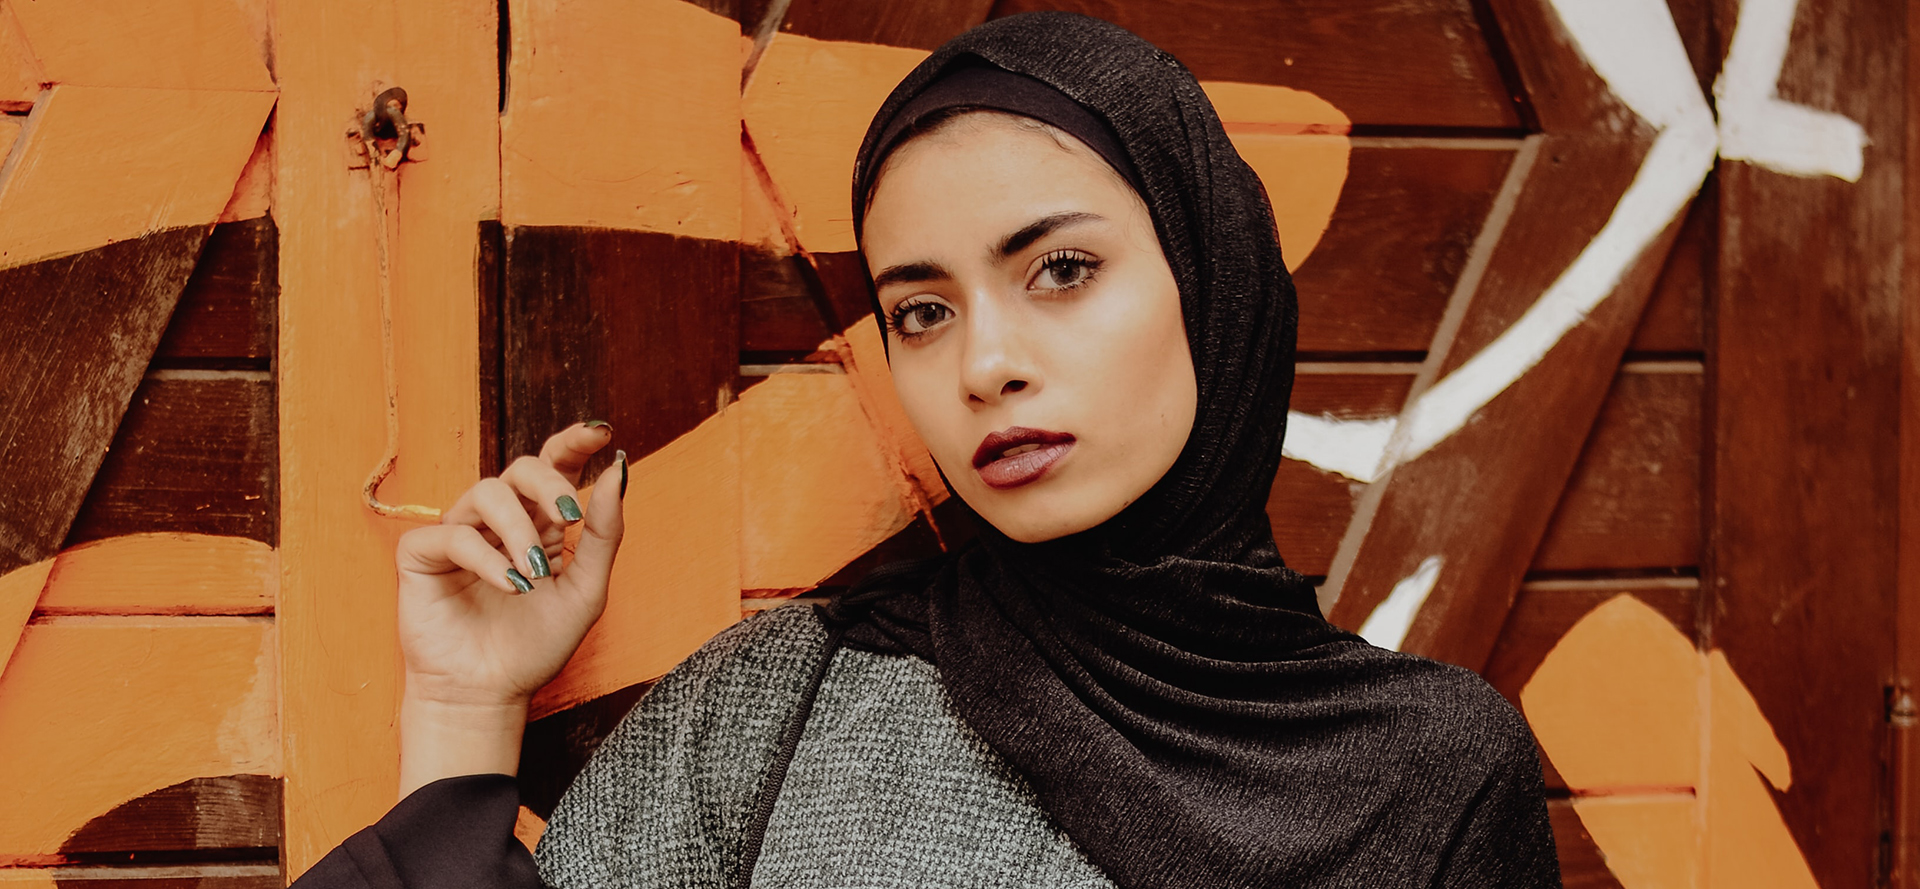 Arabische vrouw in een zwarte hoofddoek.